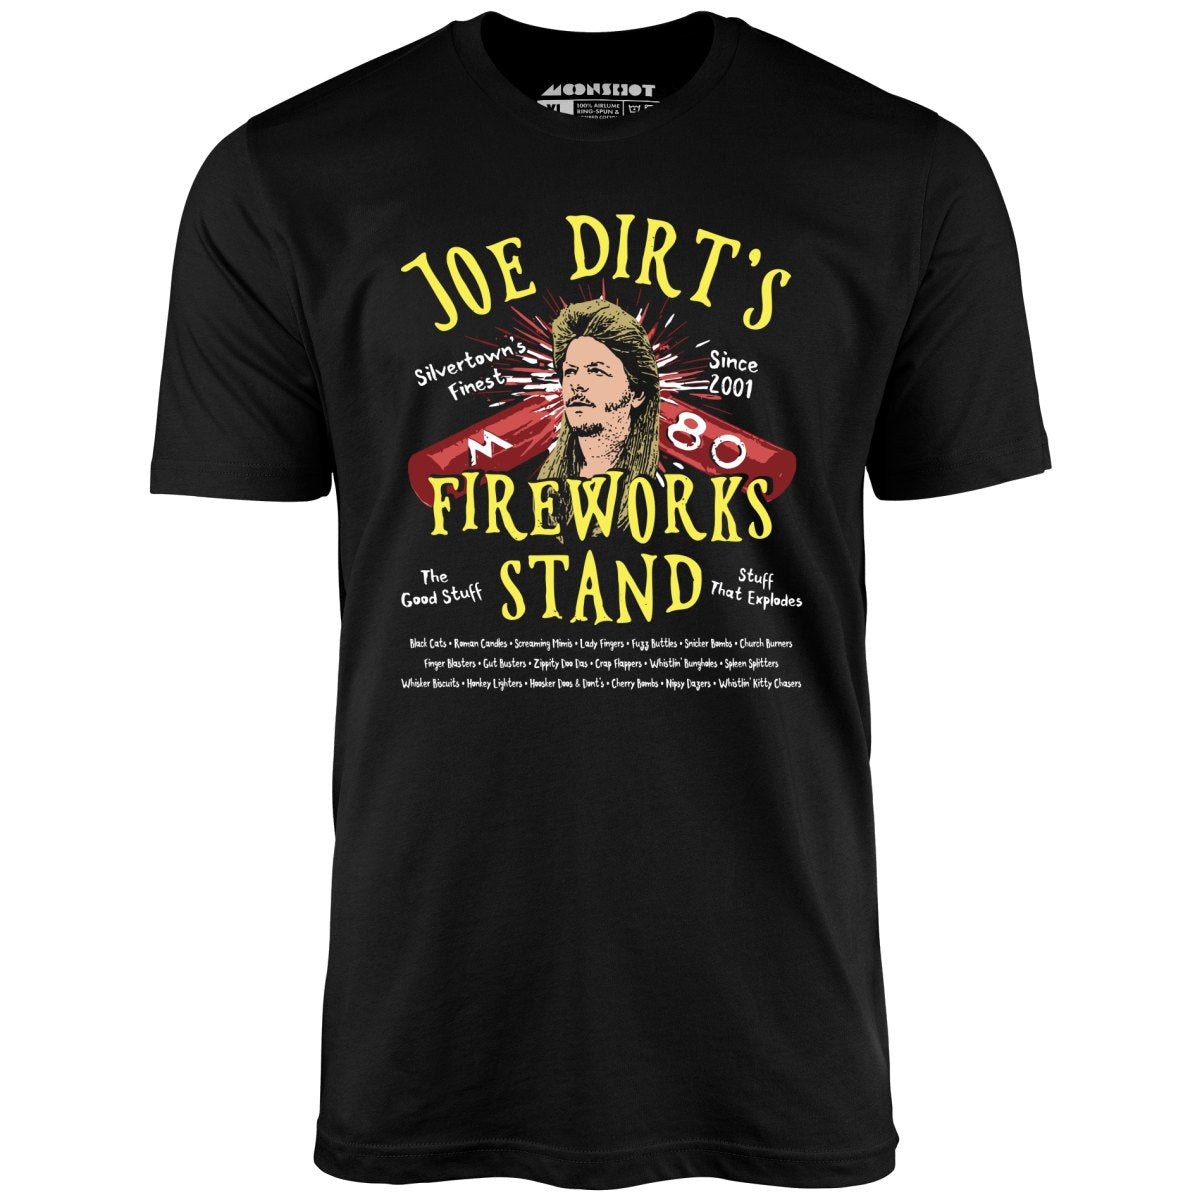 Joe Dirt's Fireworks Stand - Unisex T-Shirt